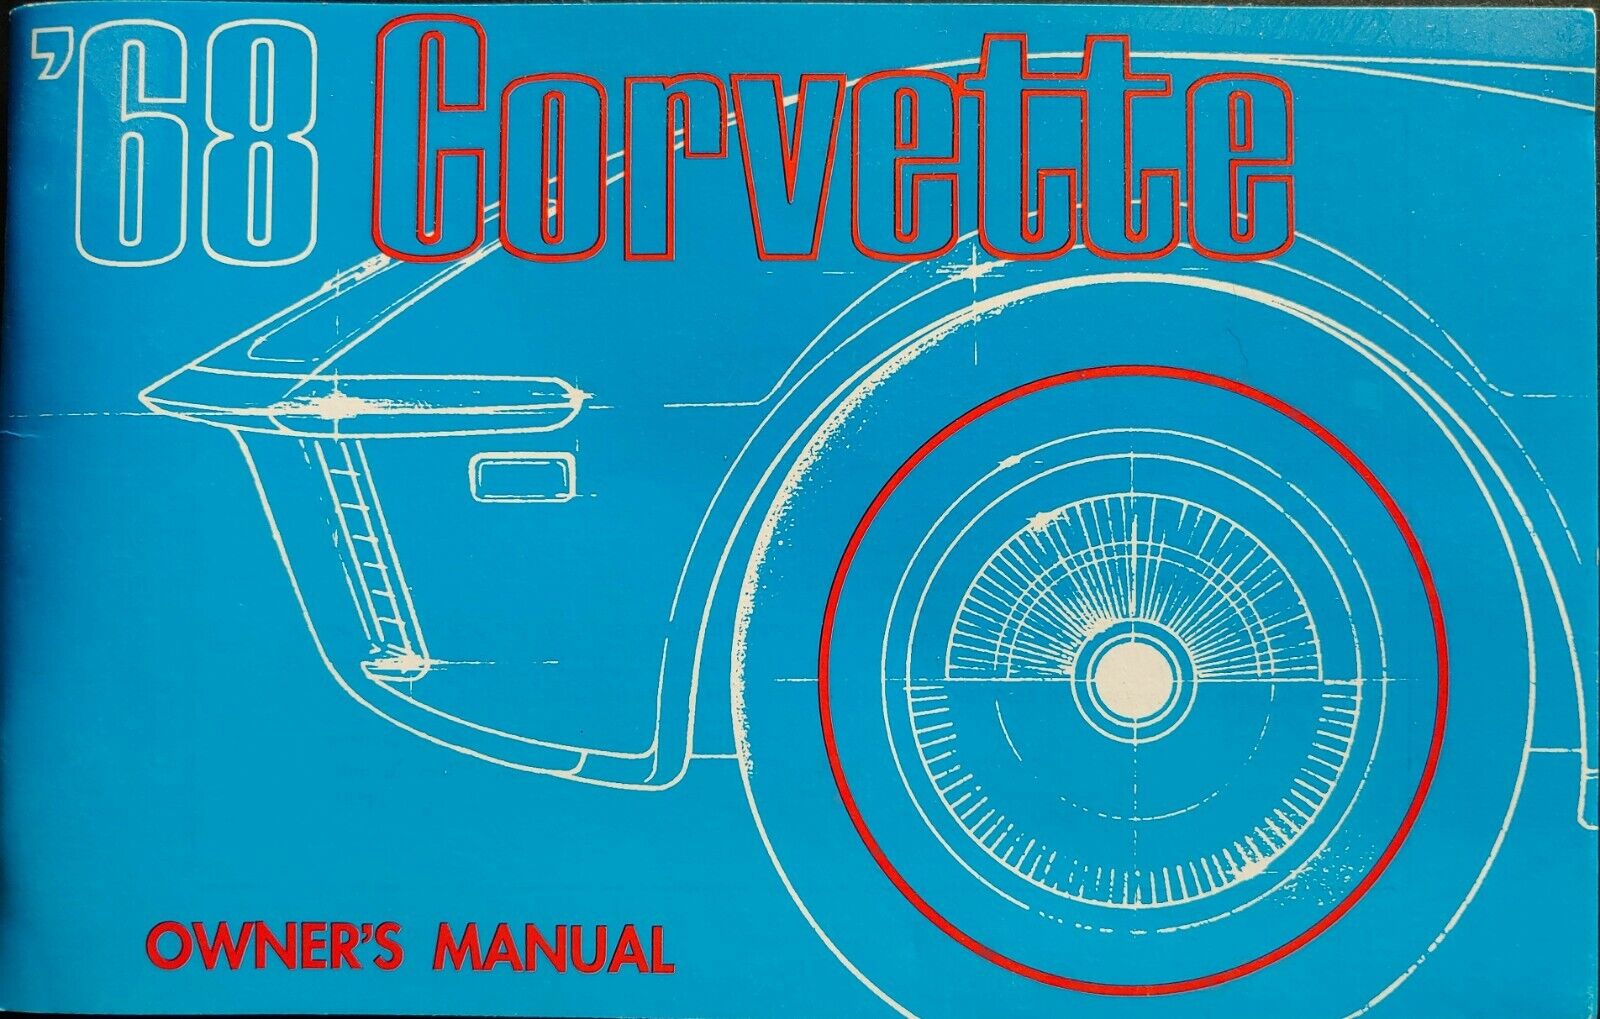 1968 Corvette Owners Manual